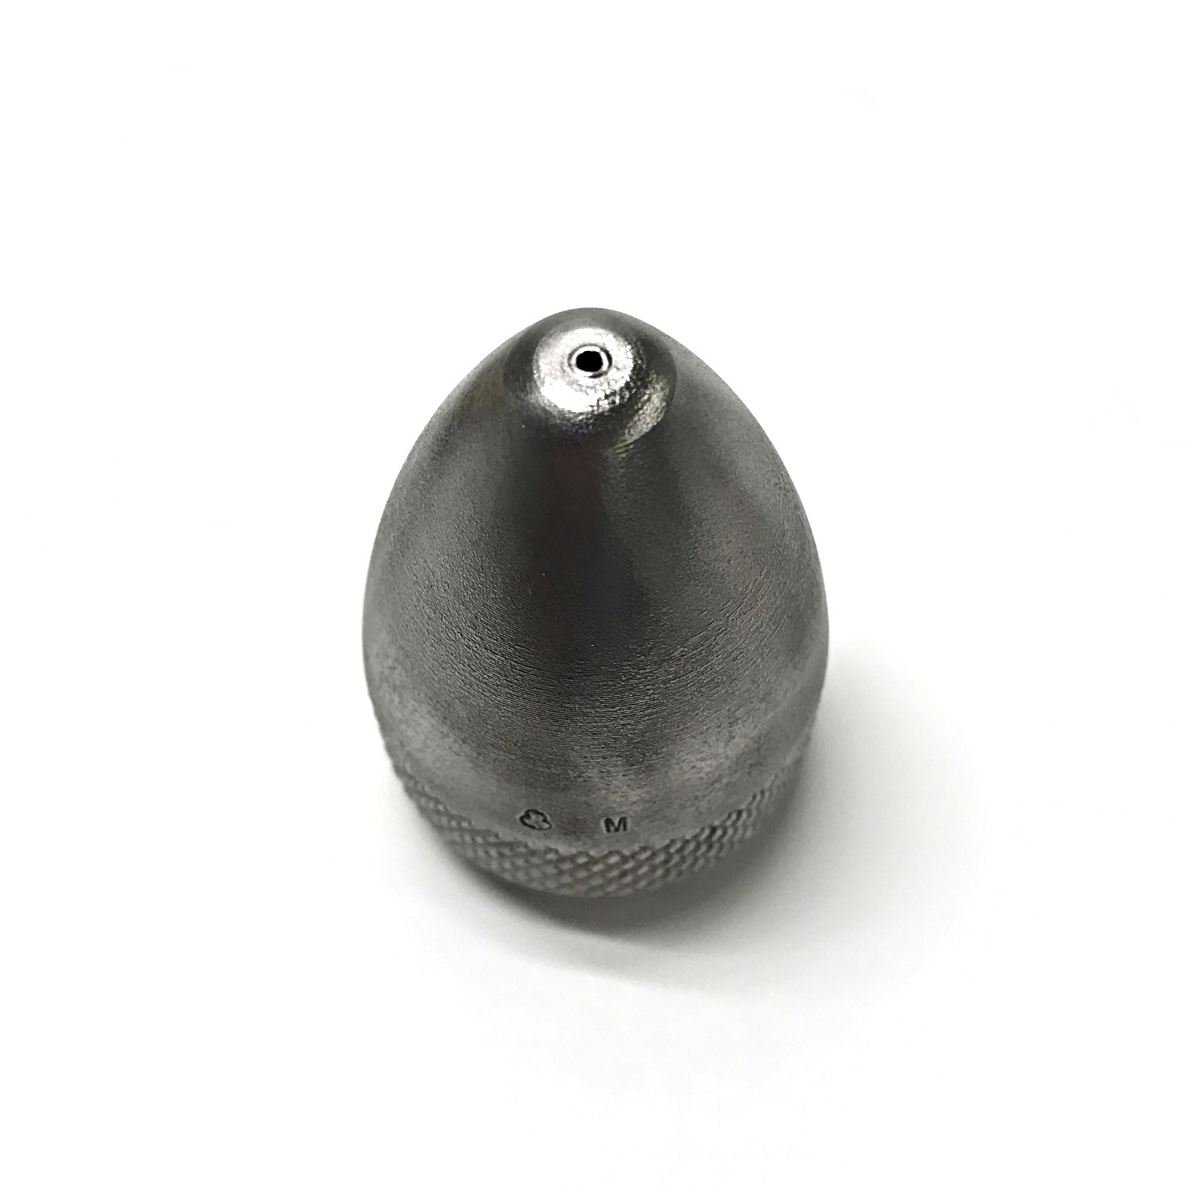 1/2" Ellipse Penetrator Nozzle Top View